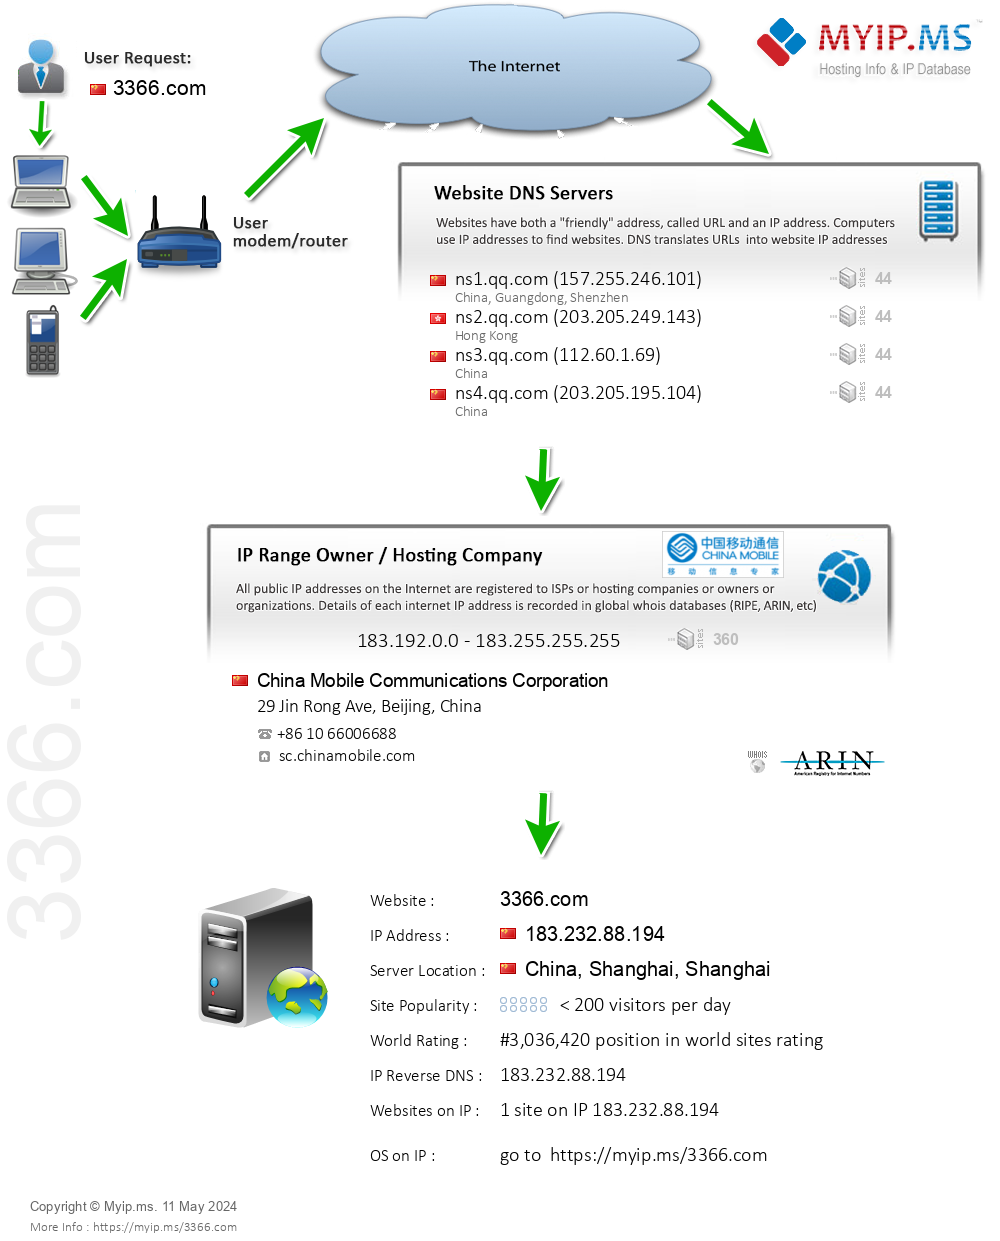 3366.com - Website Hosting Visual IP Diagram